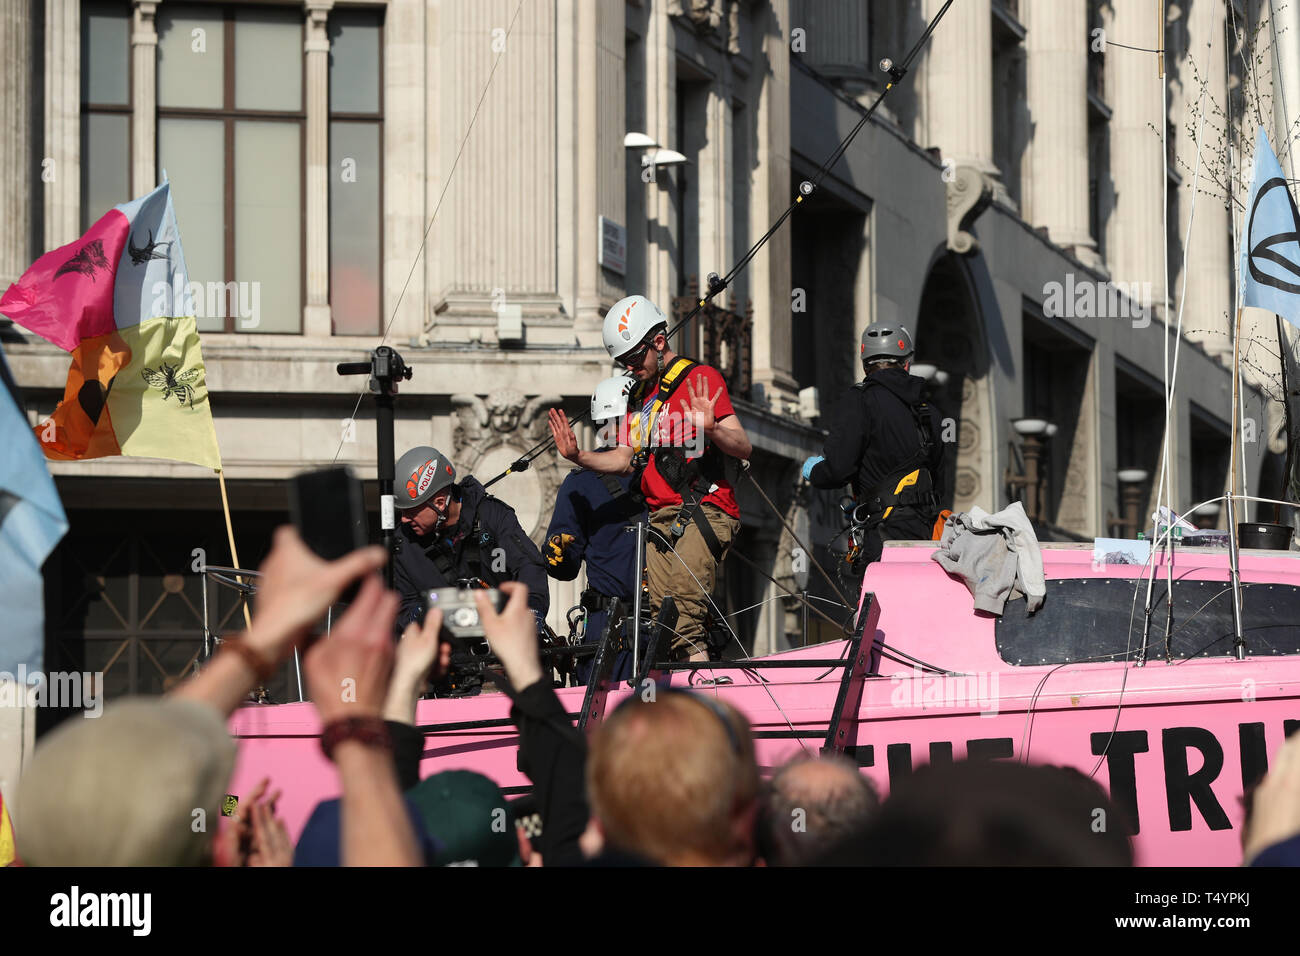 L'un des derniers manifestants rébellion Extinction attaché à la 'vérité' bateau, qui lui-même collé au mât, est détaché par la police à Oxford Circus, Londres. Banque D'Images